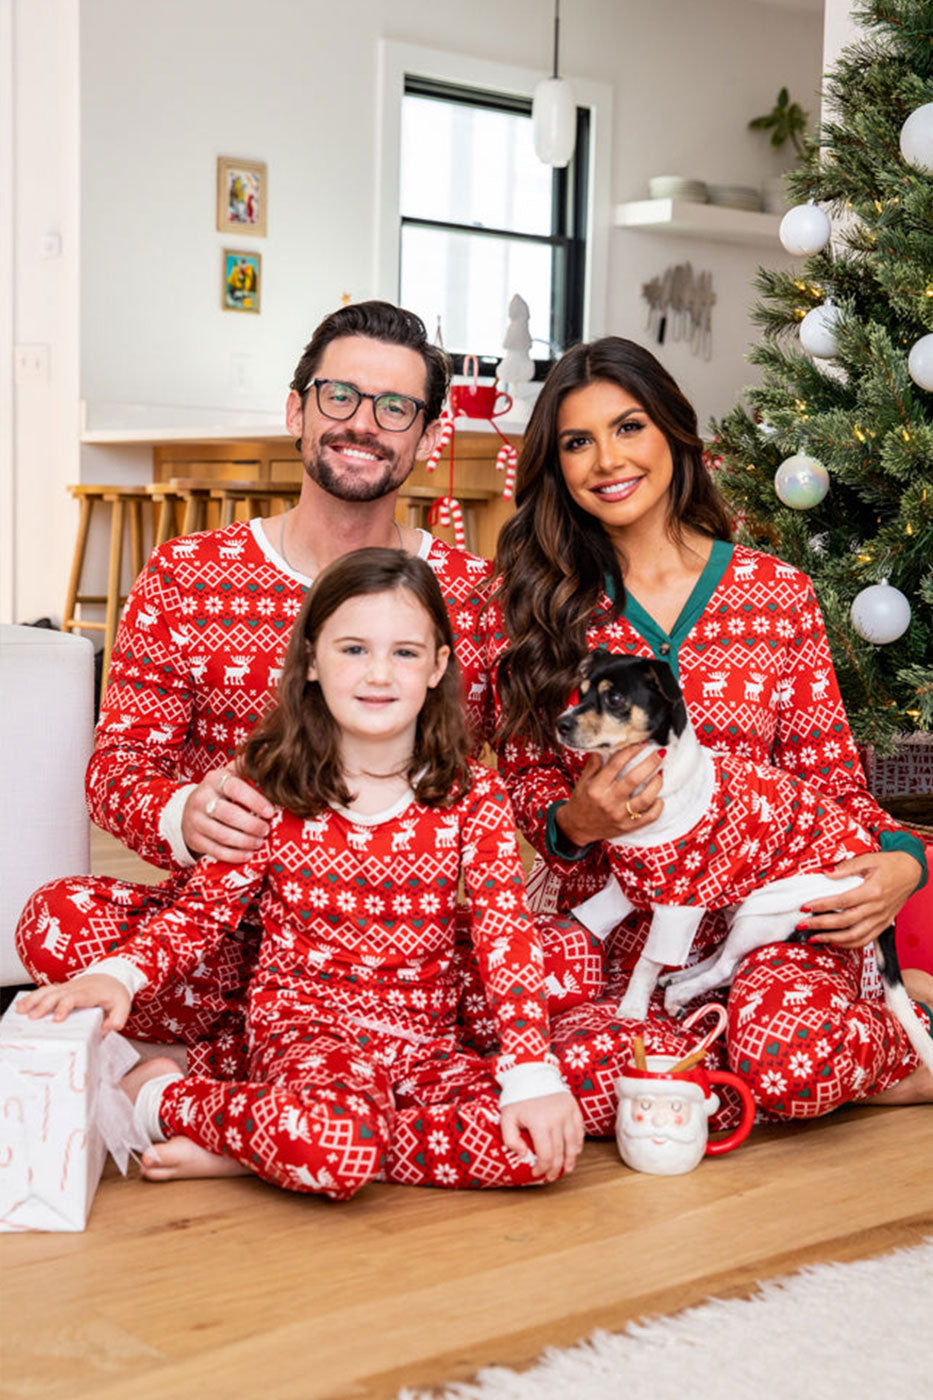 Pijama familiar de alce navideño a juego